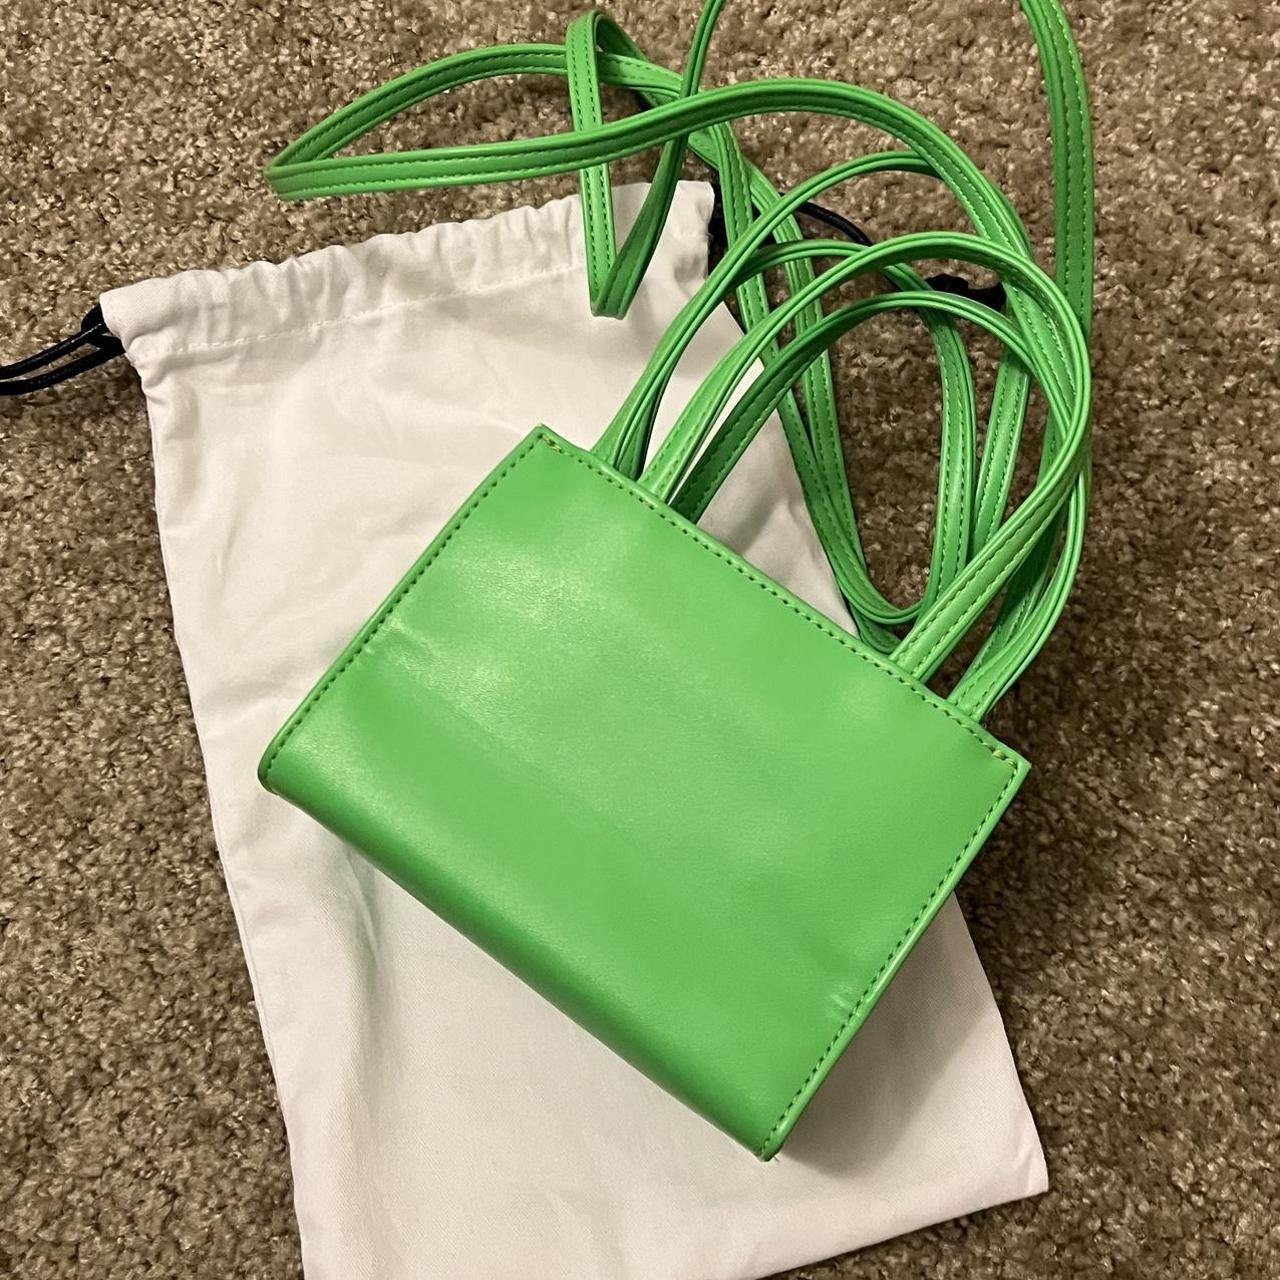 Medium Shopping Bag - Highlighter Green